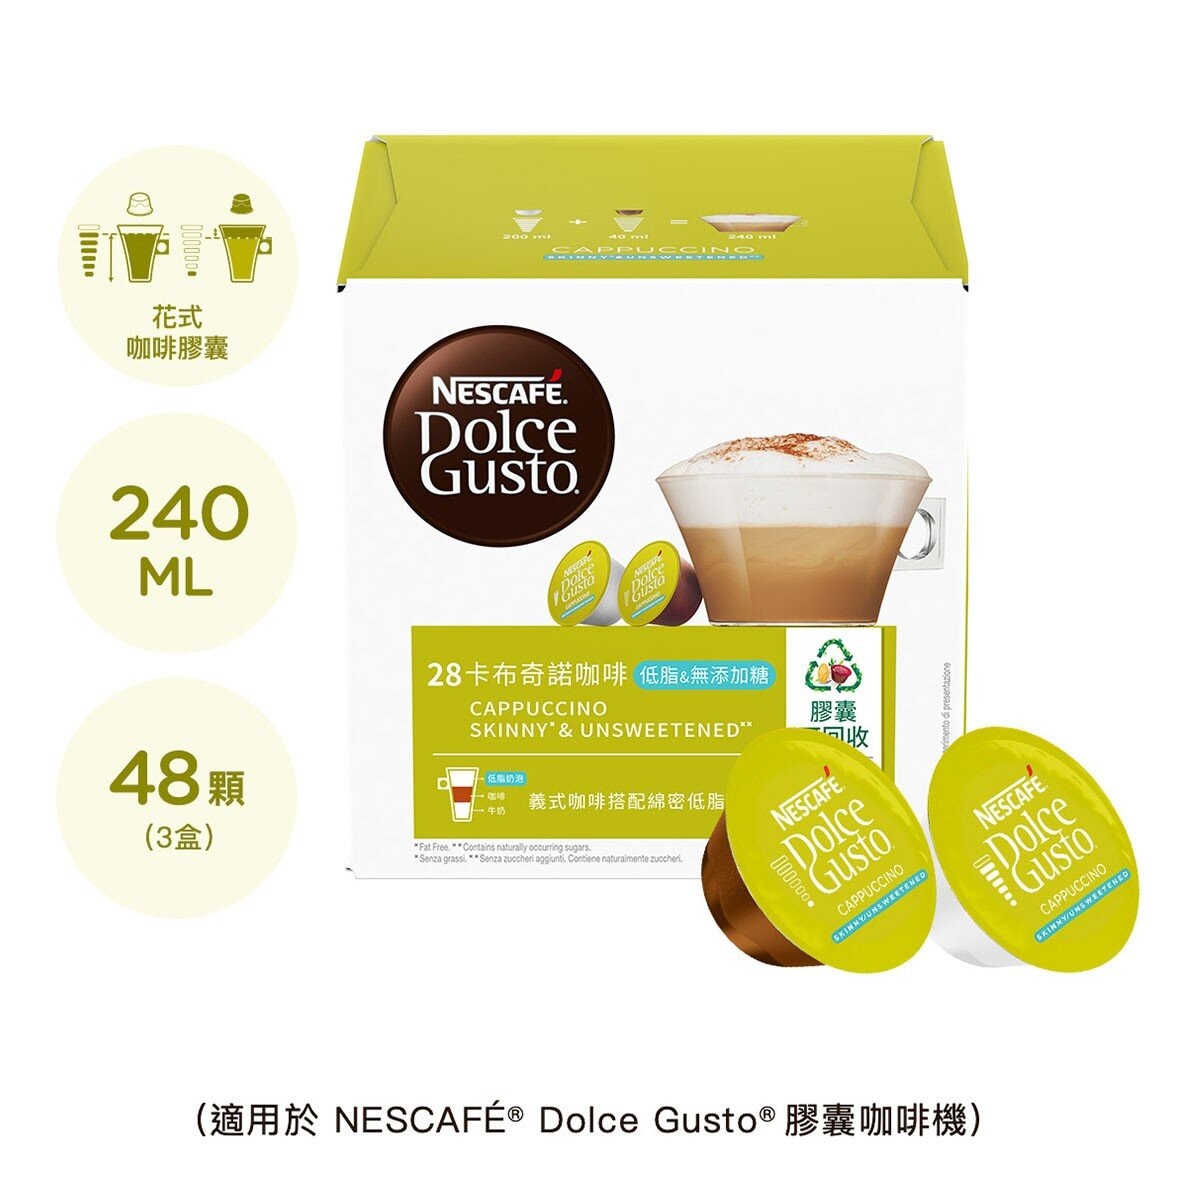 雀巢多趣酷思 低脂無添加糖卡布奇諾 + 拿鐵瑪奇朵咖啡膠囊組 96顆 適用NESCAFE Dolce Gusto機器